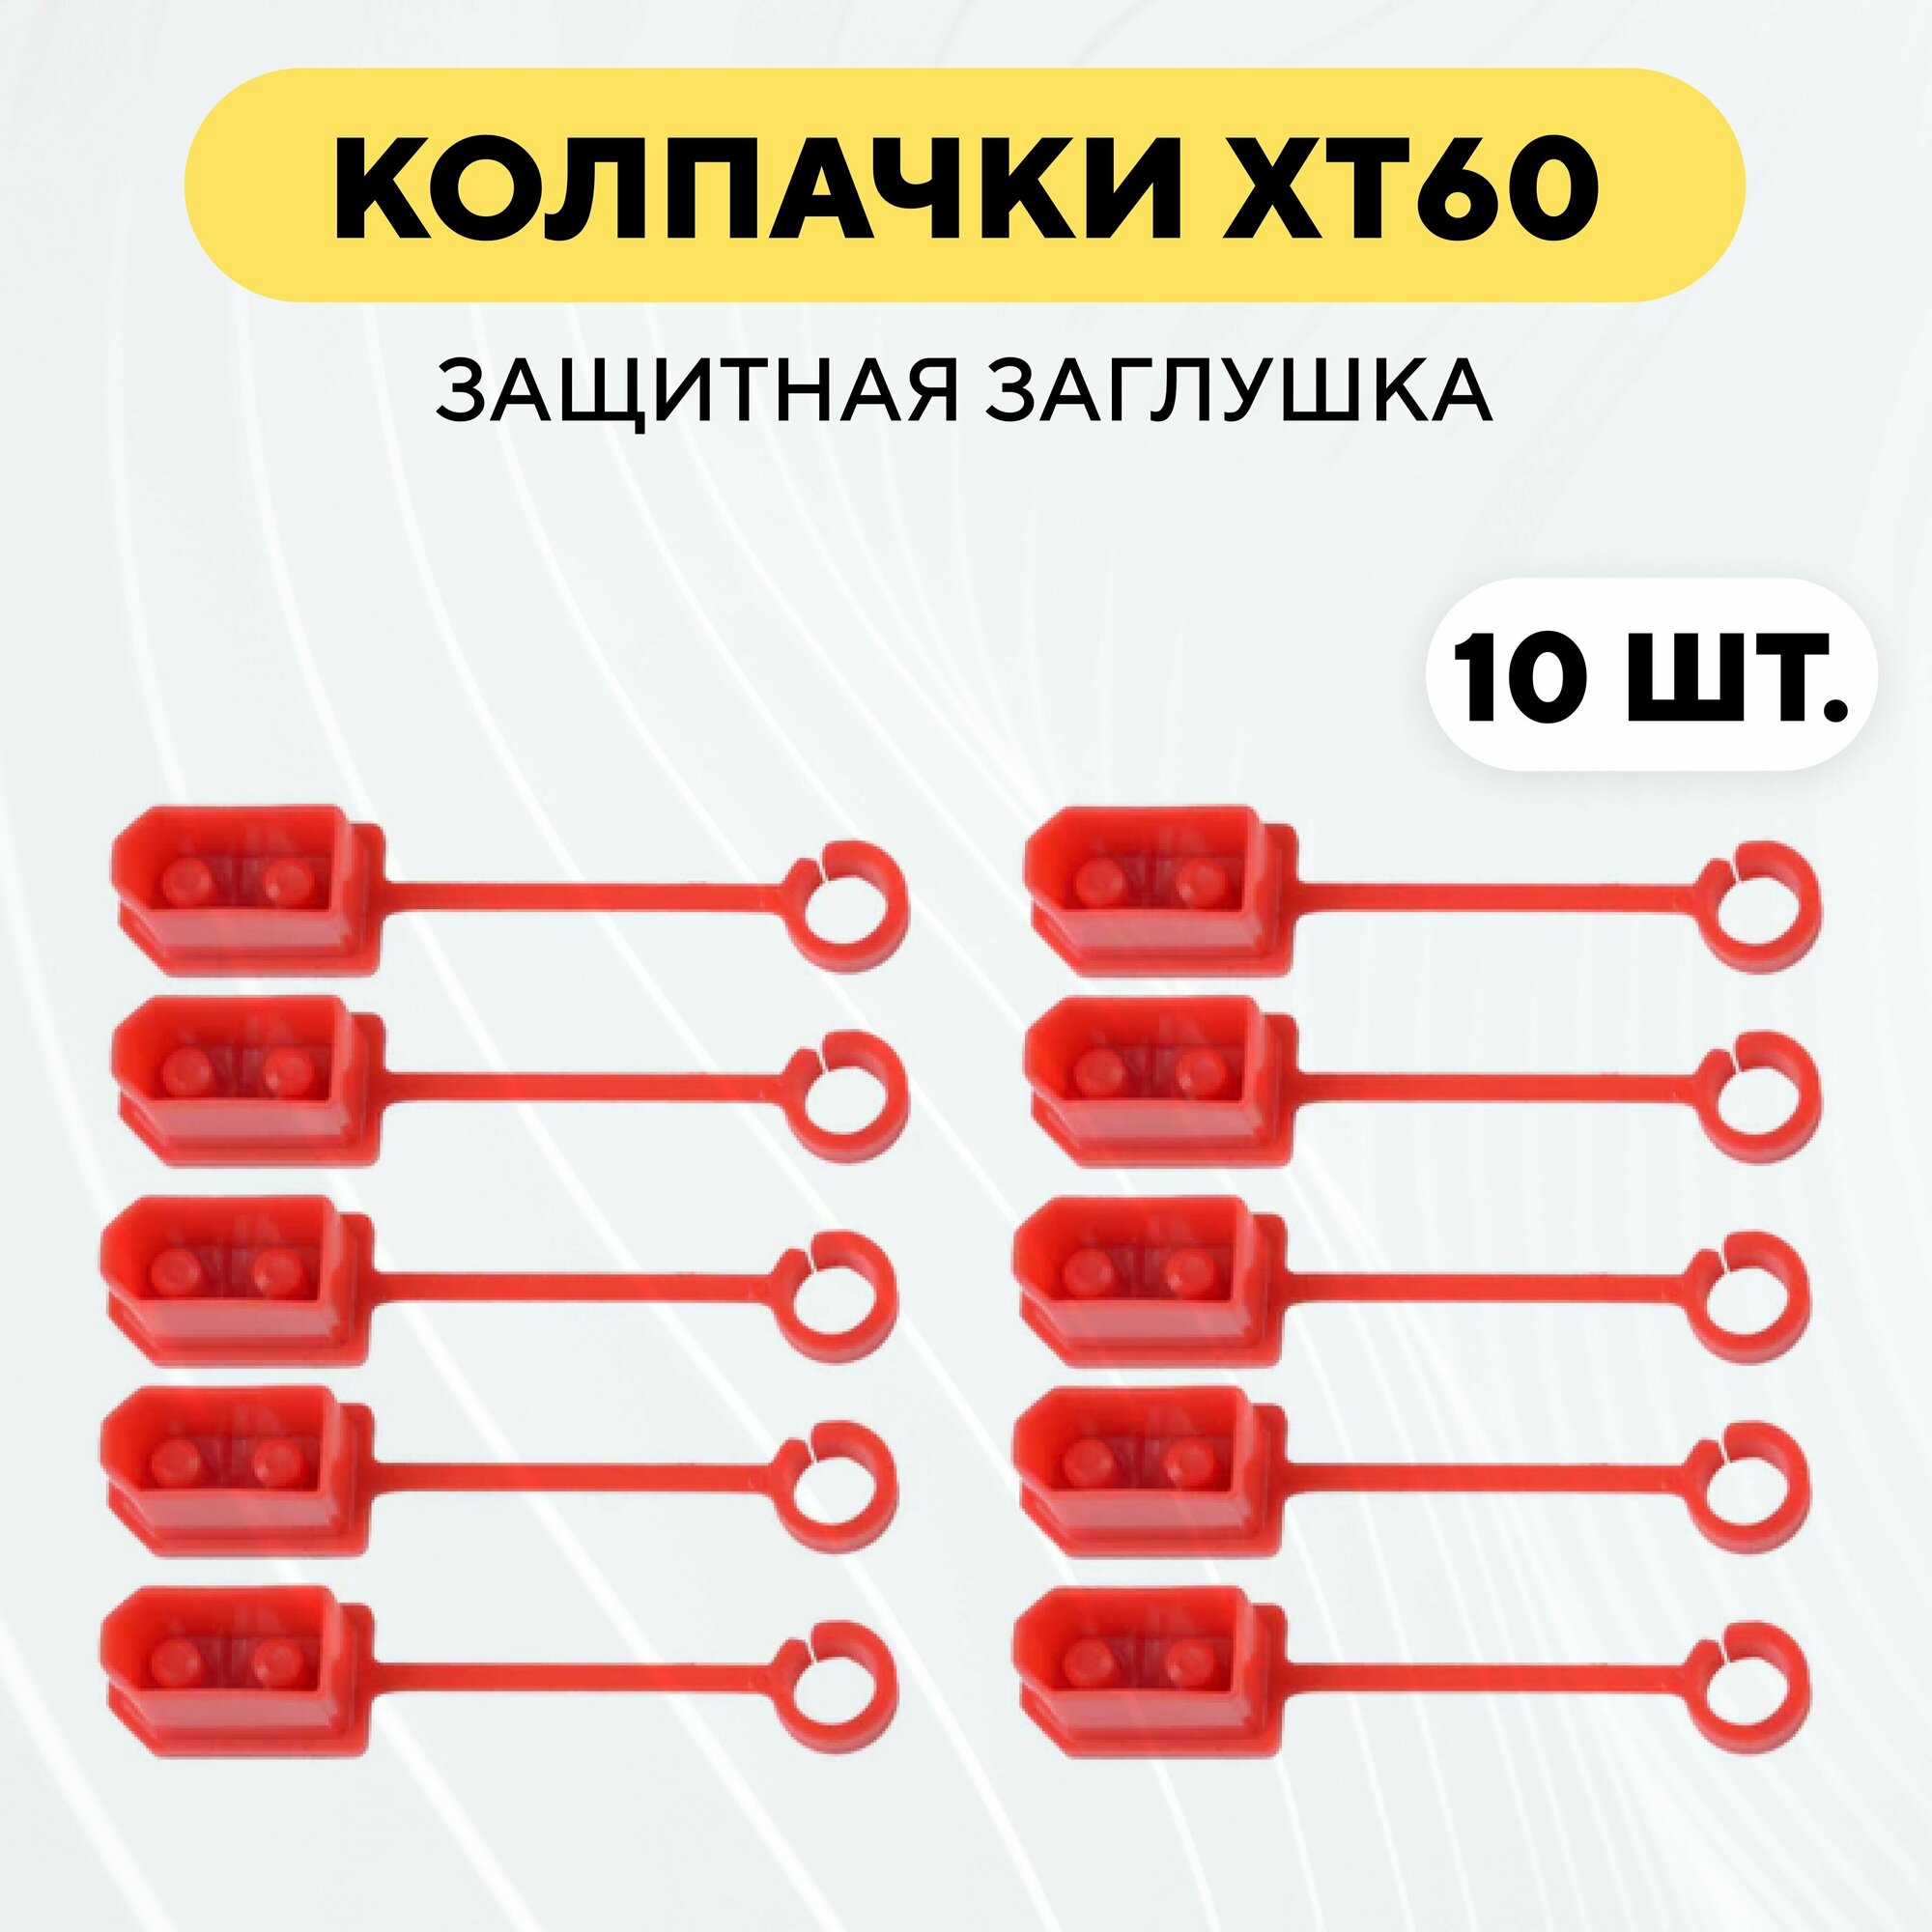 Колпачок для разъема XT60, защитная заглушка (10 штук, красный)